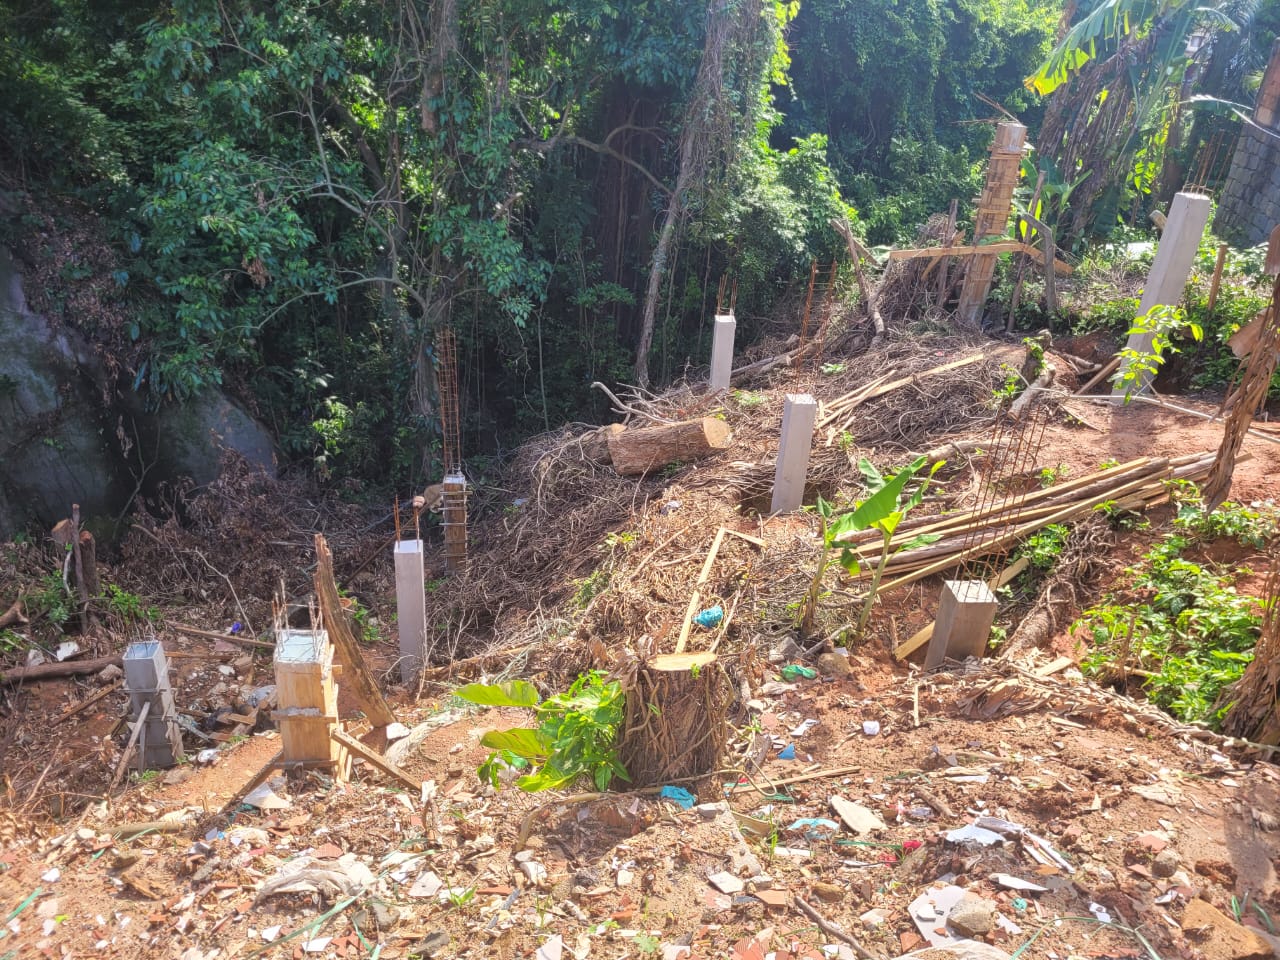 Após denúncia, polícia encontra árvores cortadas sem autorização em obra que vinha sendo realizada em Mangaratiba 